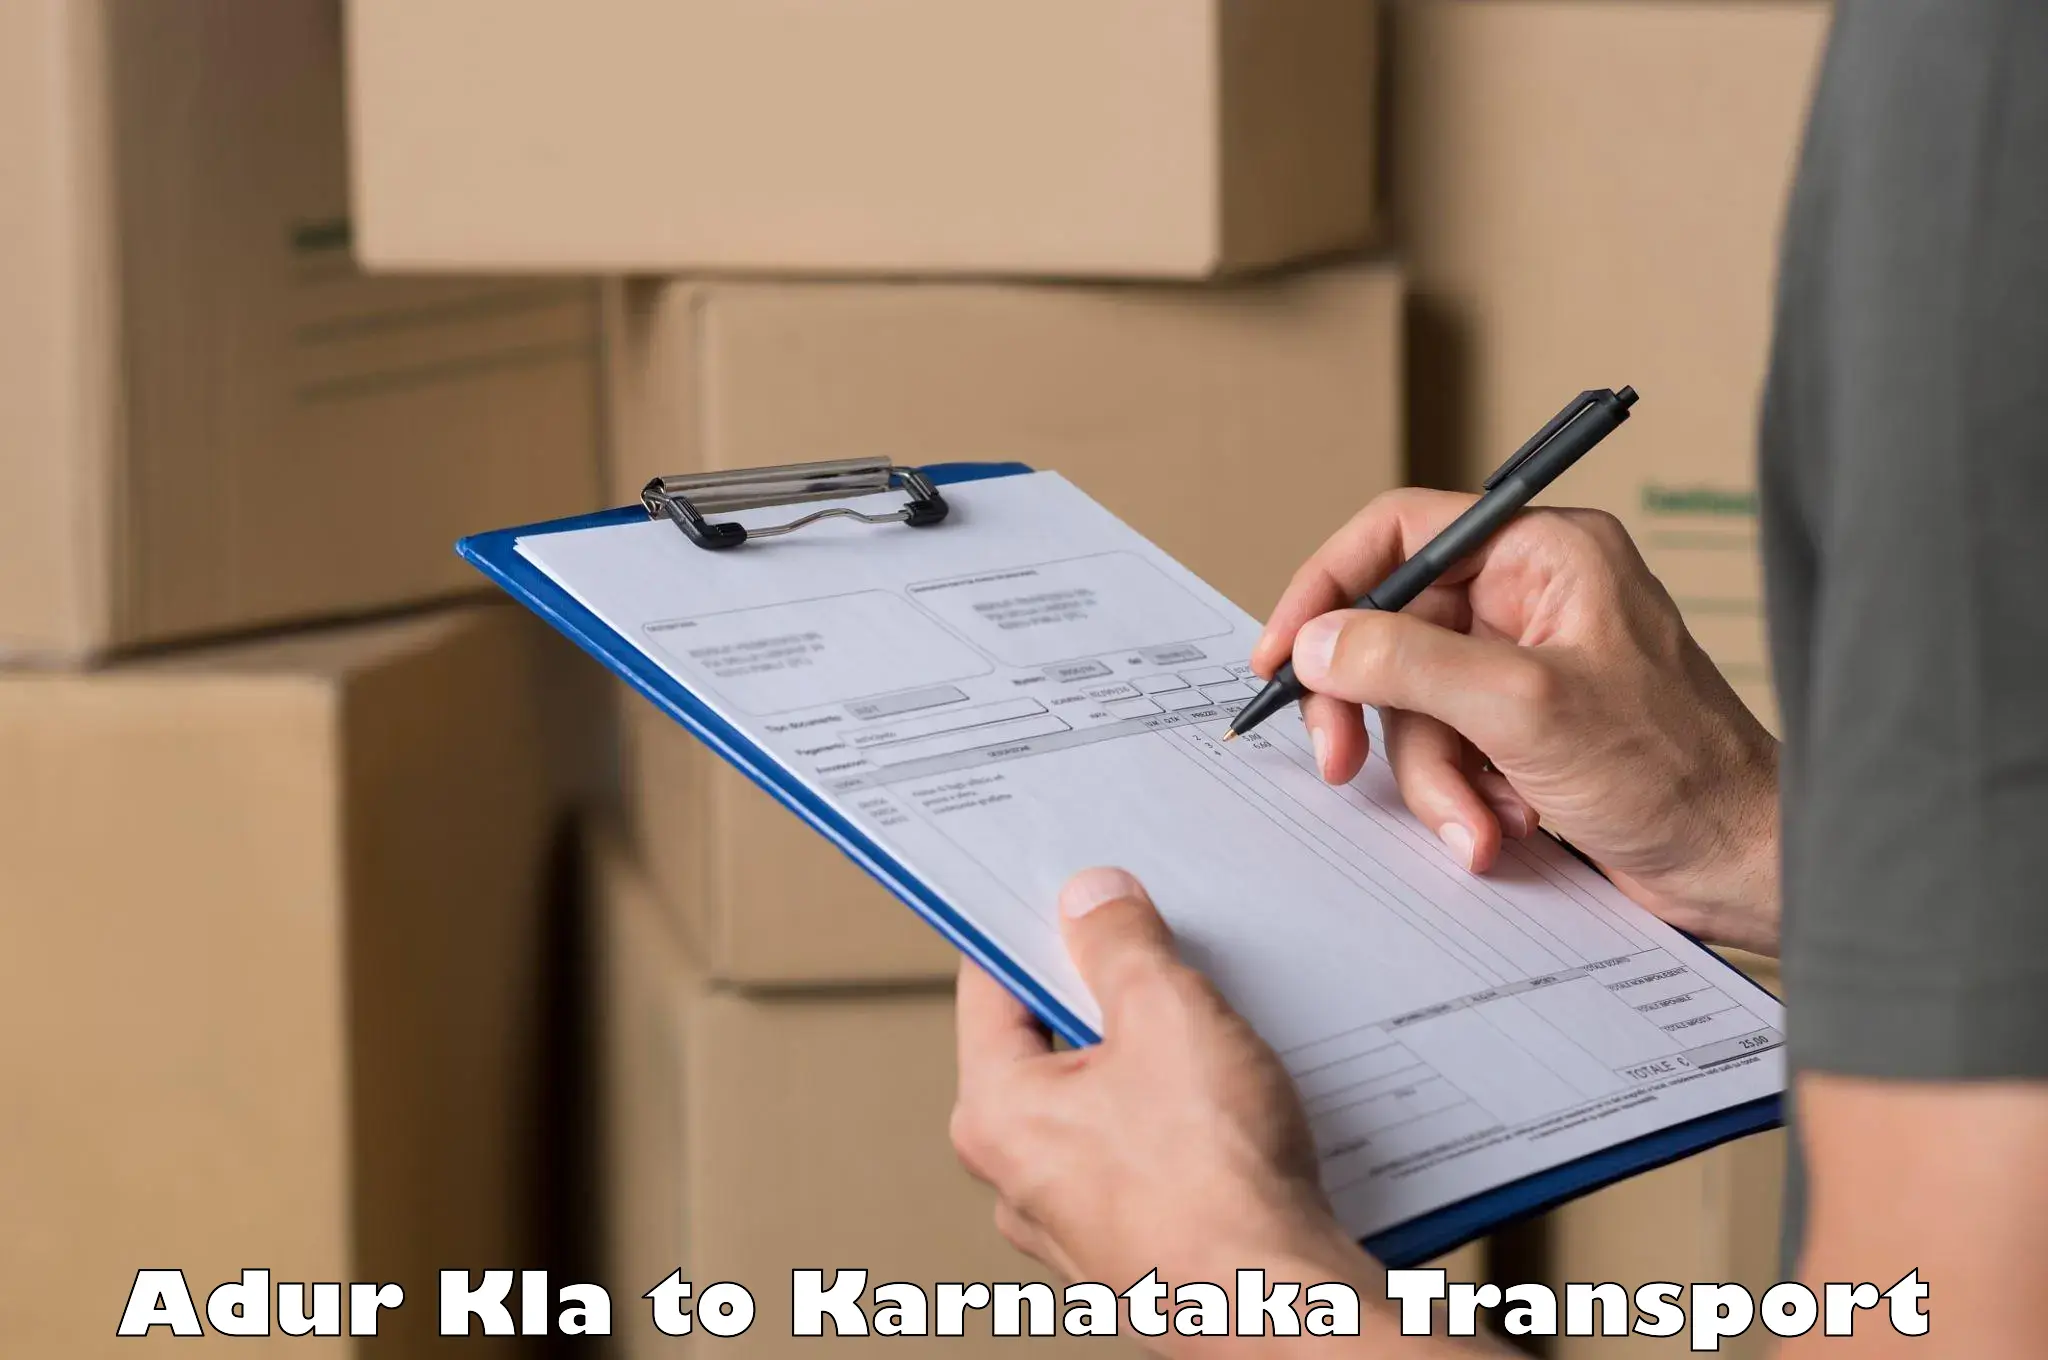 Vehicle courier services Adur Kla to Channagiri